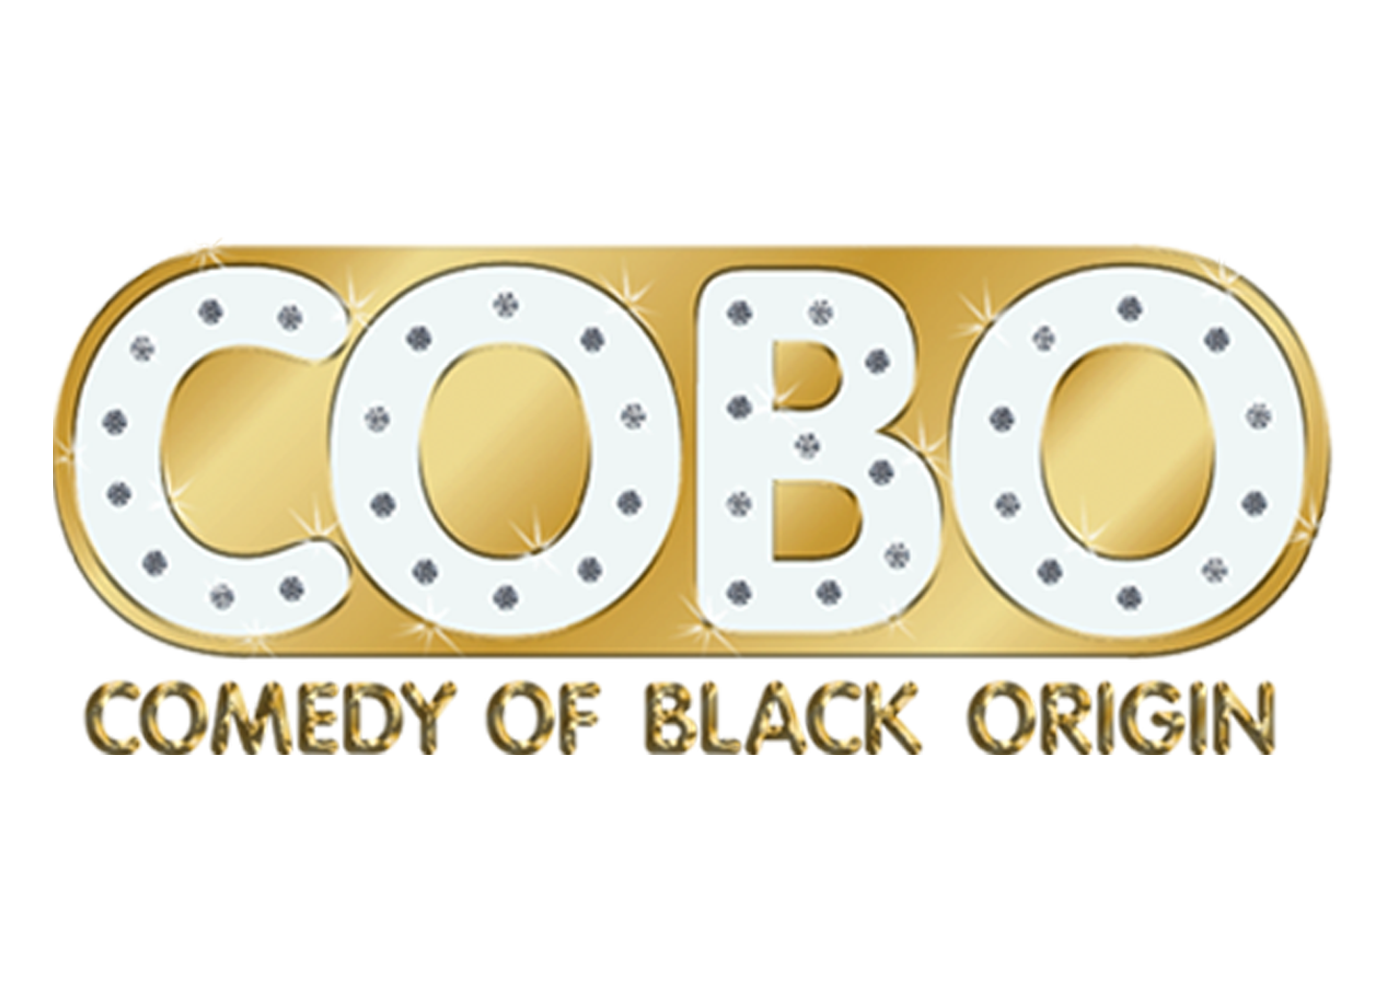 COBO Logo